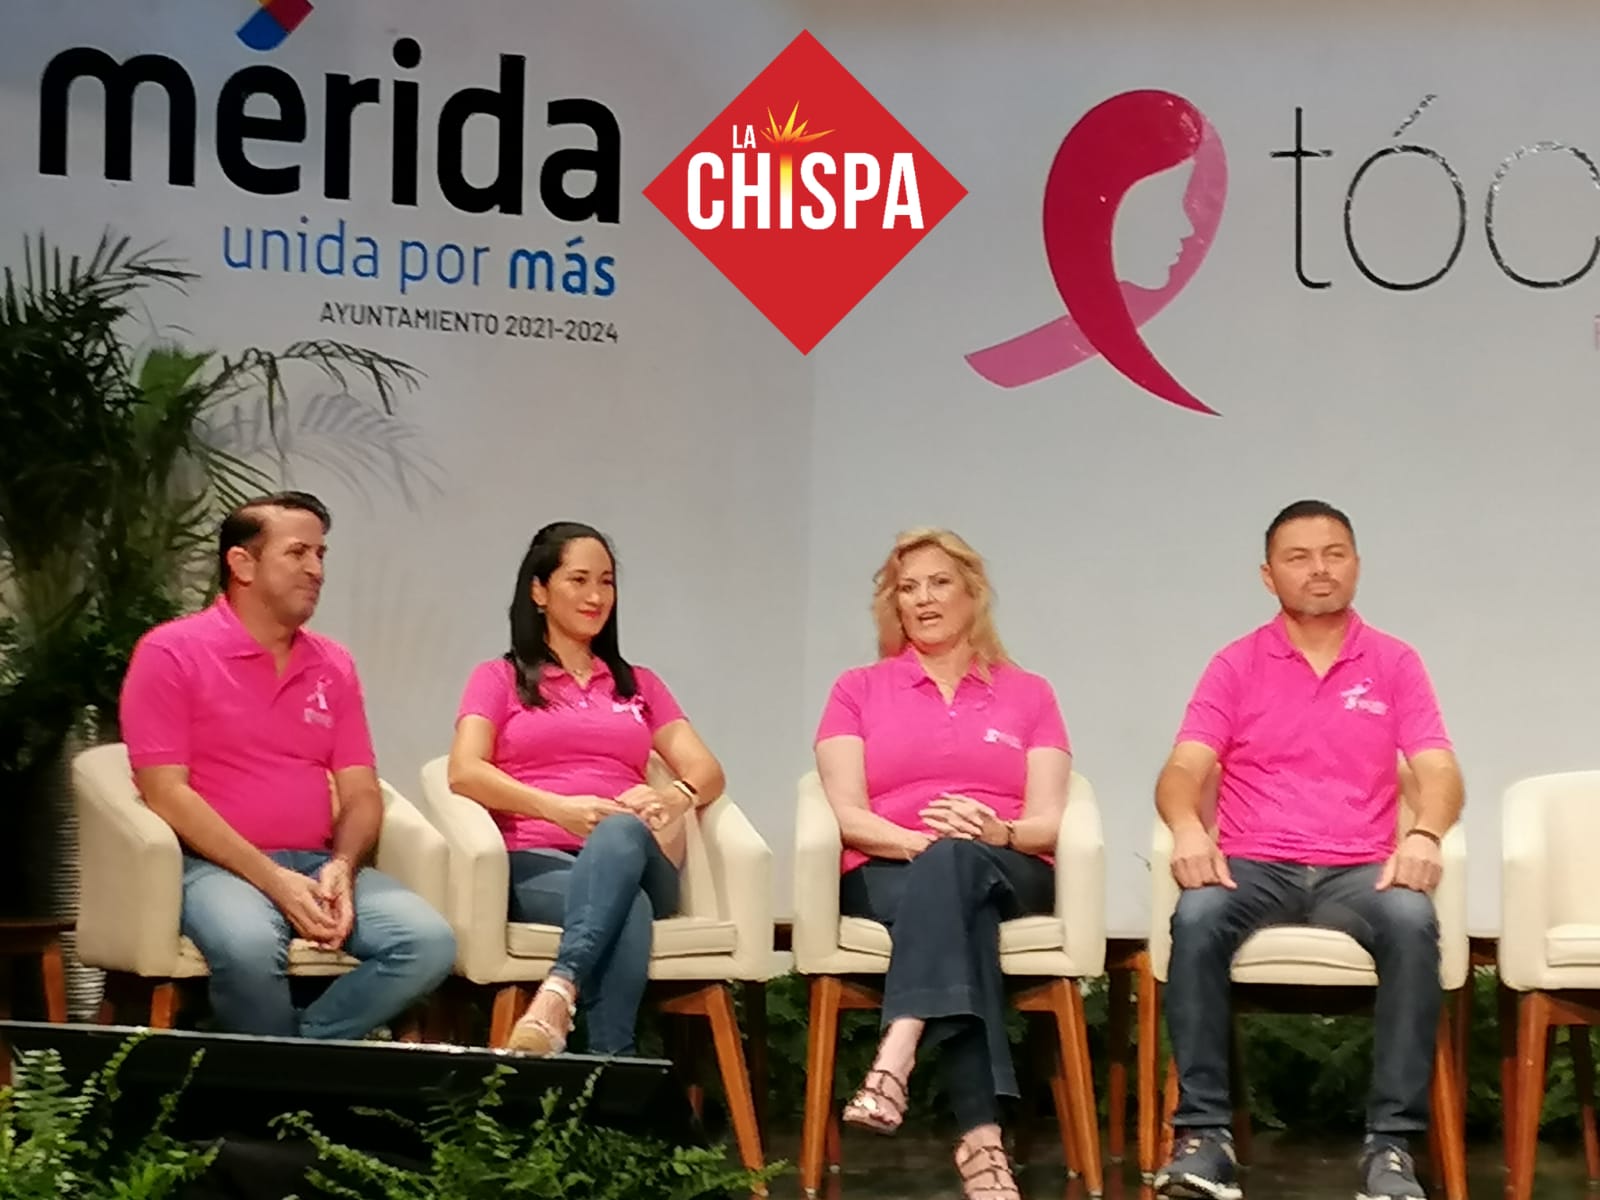 En Yucatán, según datos hasta octubre de 2022, cerca de 1500 mujeres fueron diagnosticadas con cáncer mamario, de las cuales 118 fallecieron